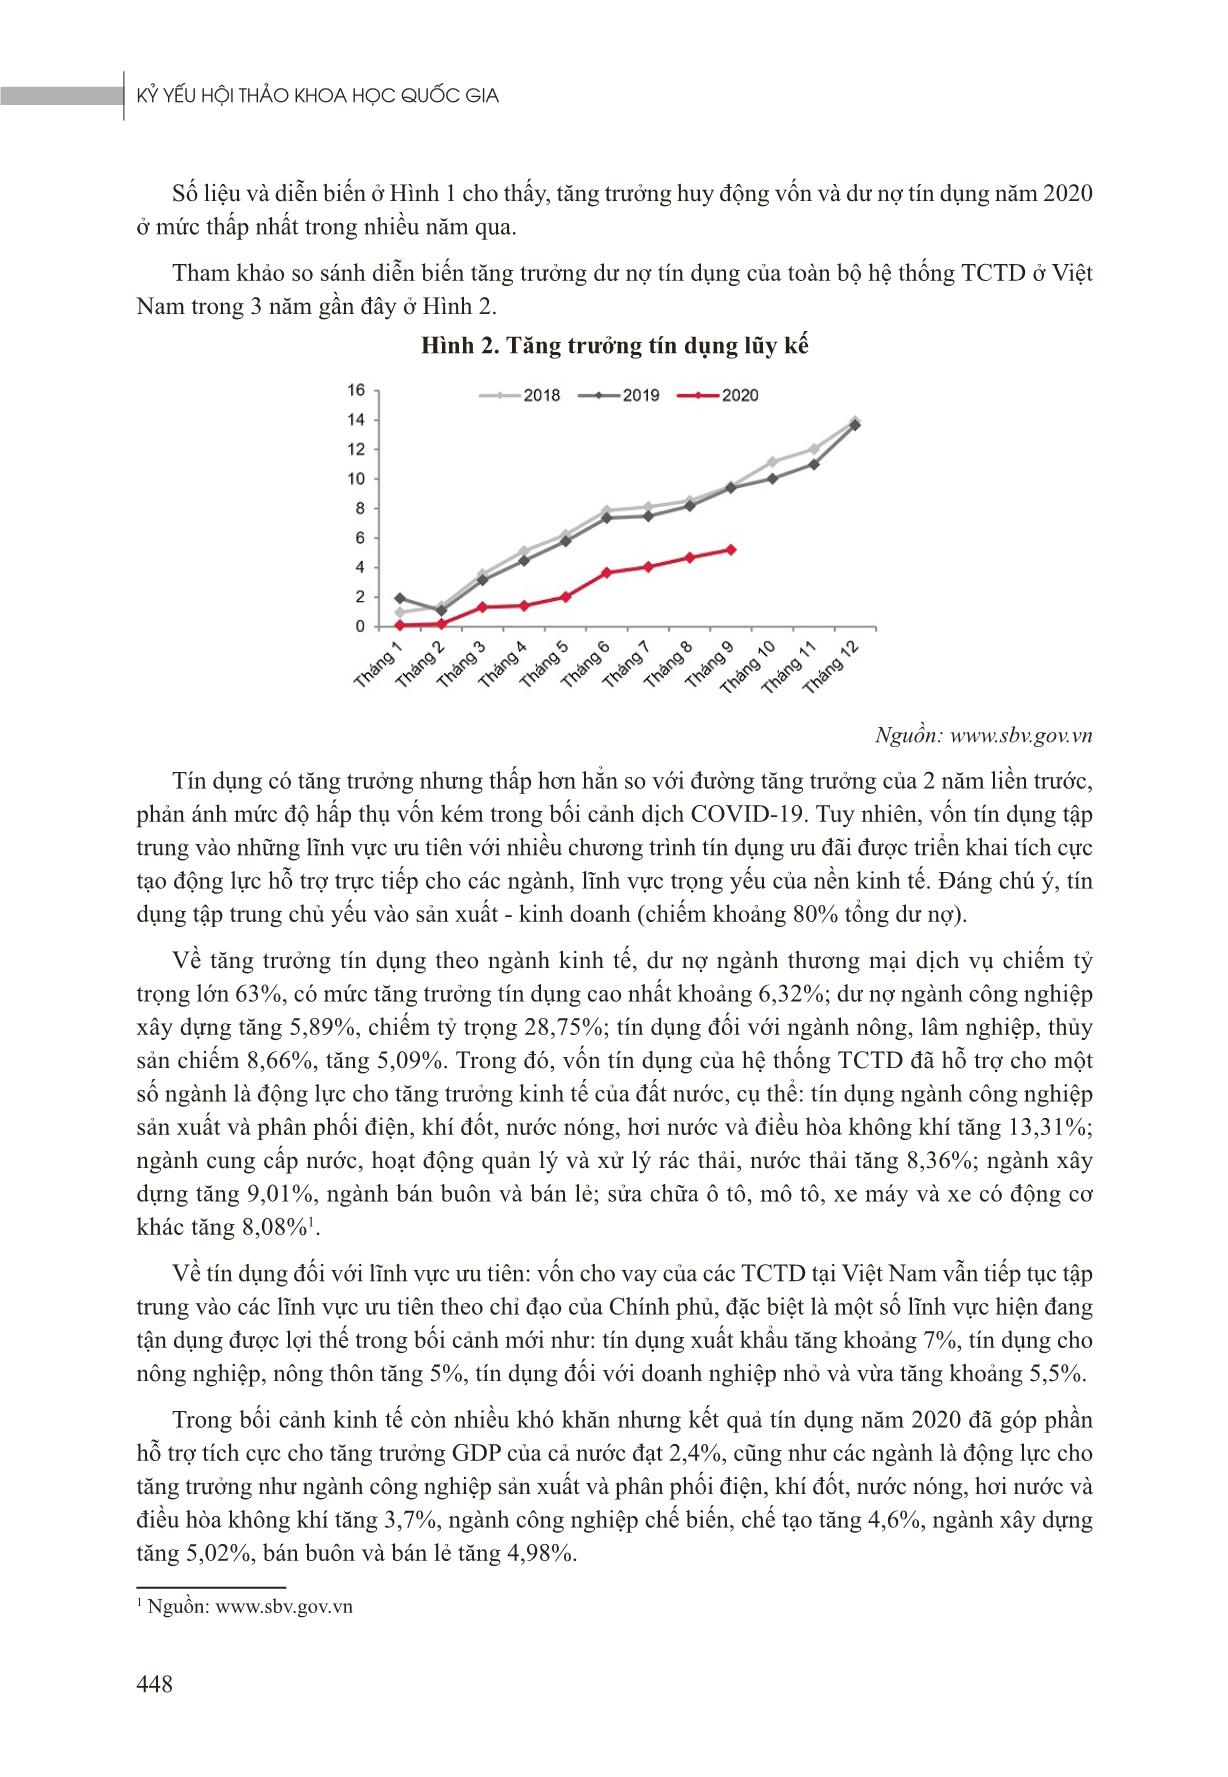 Tác động của đại dịch Covid-19 đến cho vay và nợ xấu của Ngân hàng Thương mại Việt Nam trang 3